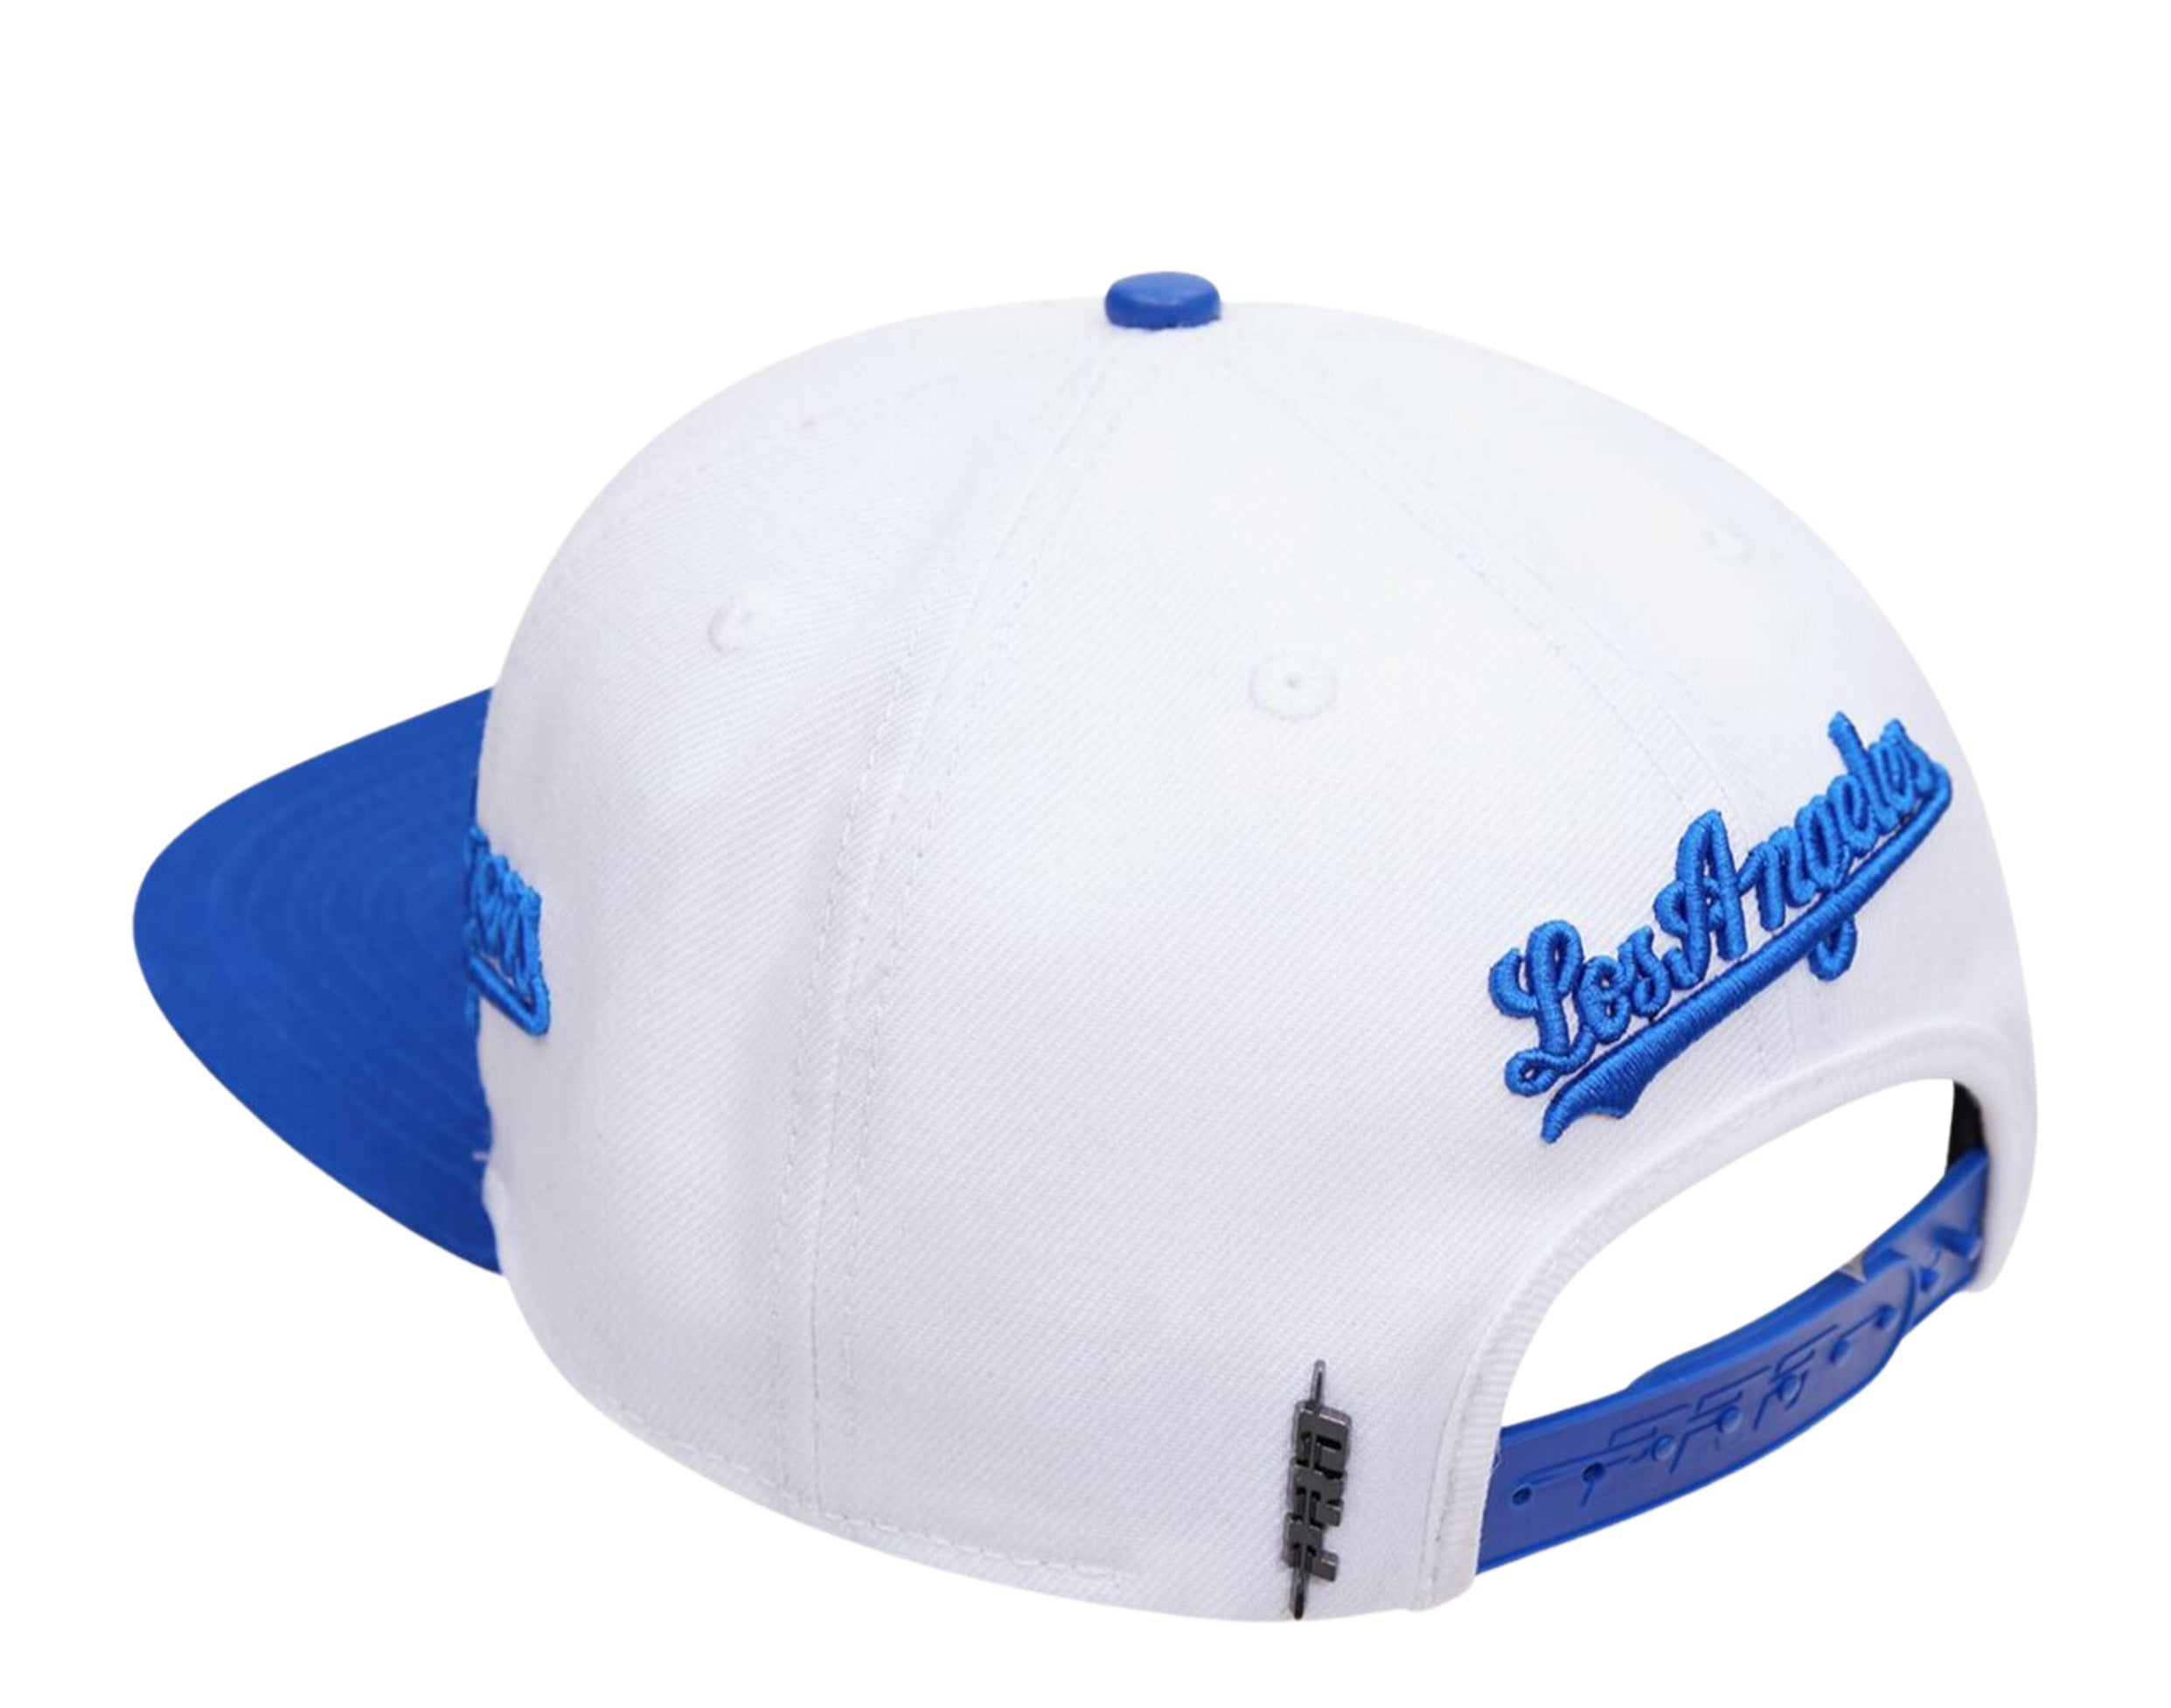 Pro Standard Los Angeles Dodgers Roses Snapback Hat (Royal Blue)